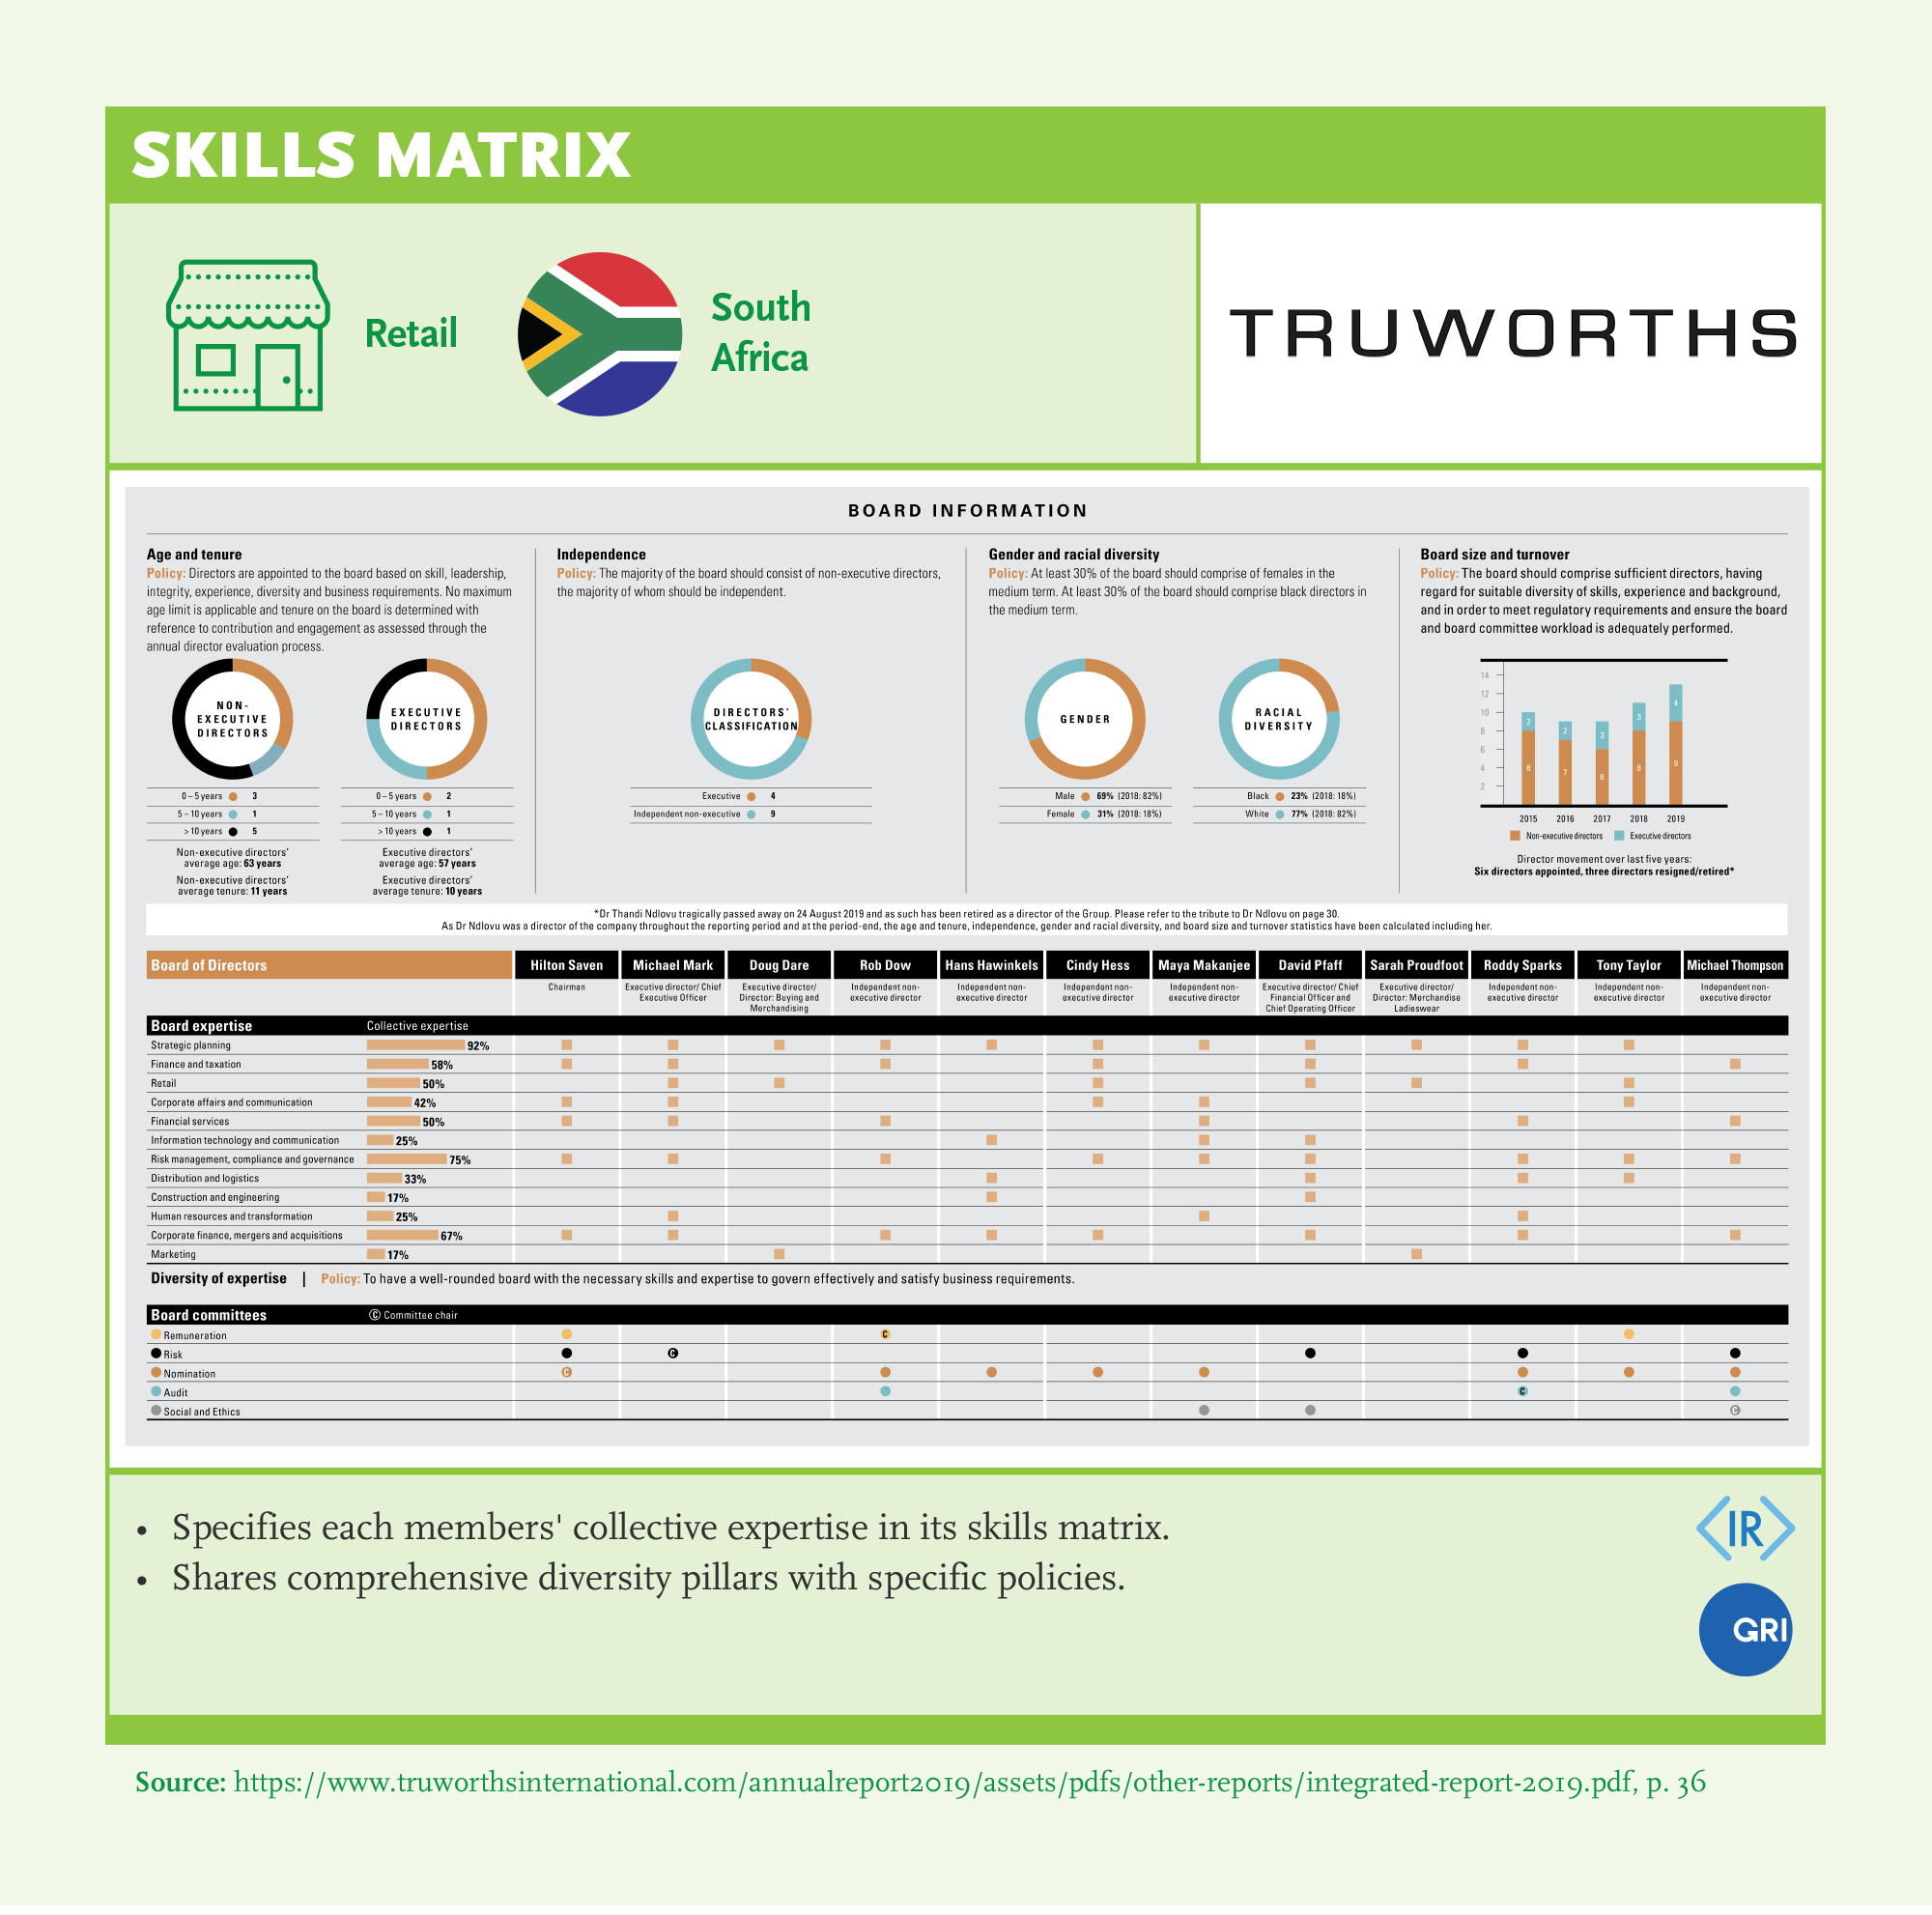 Skills Matrix: Truworths